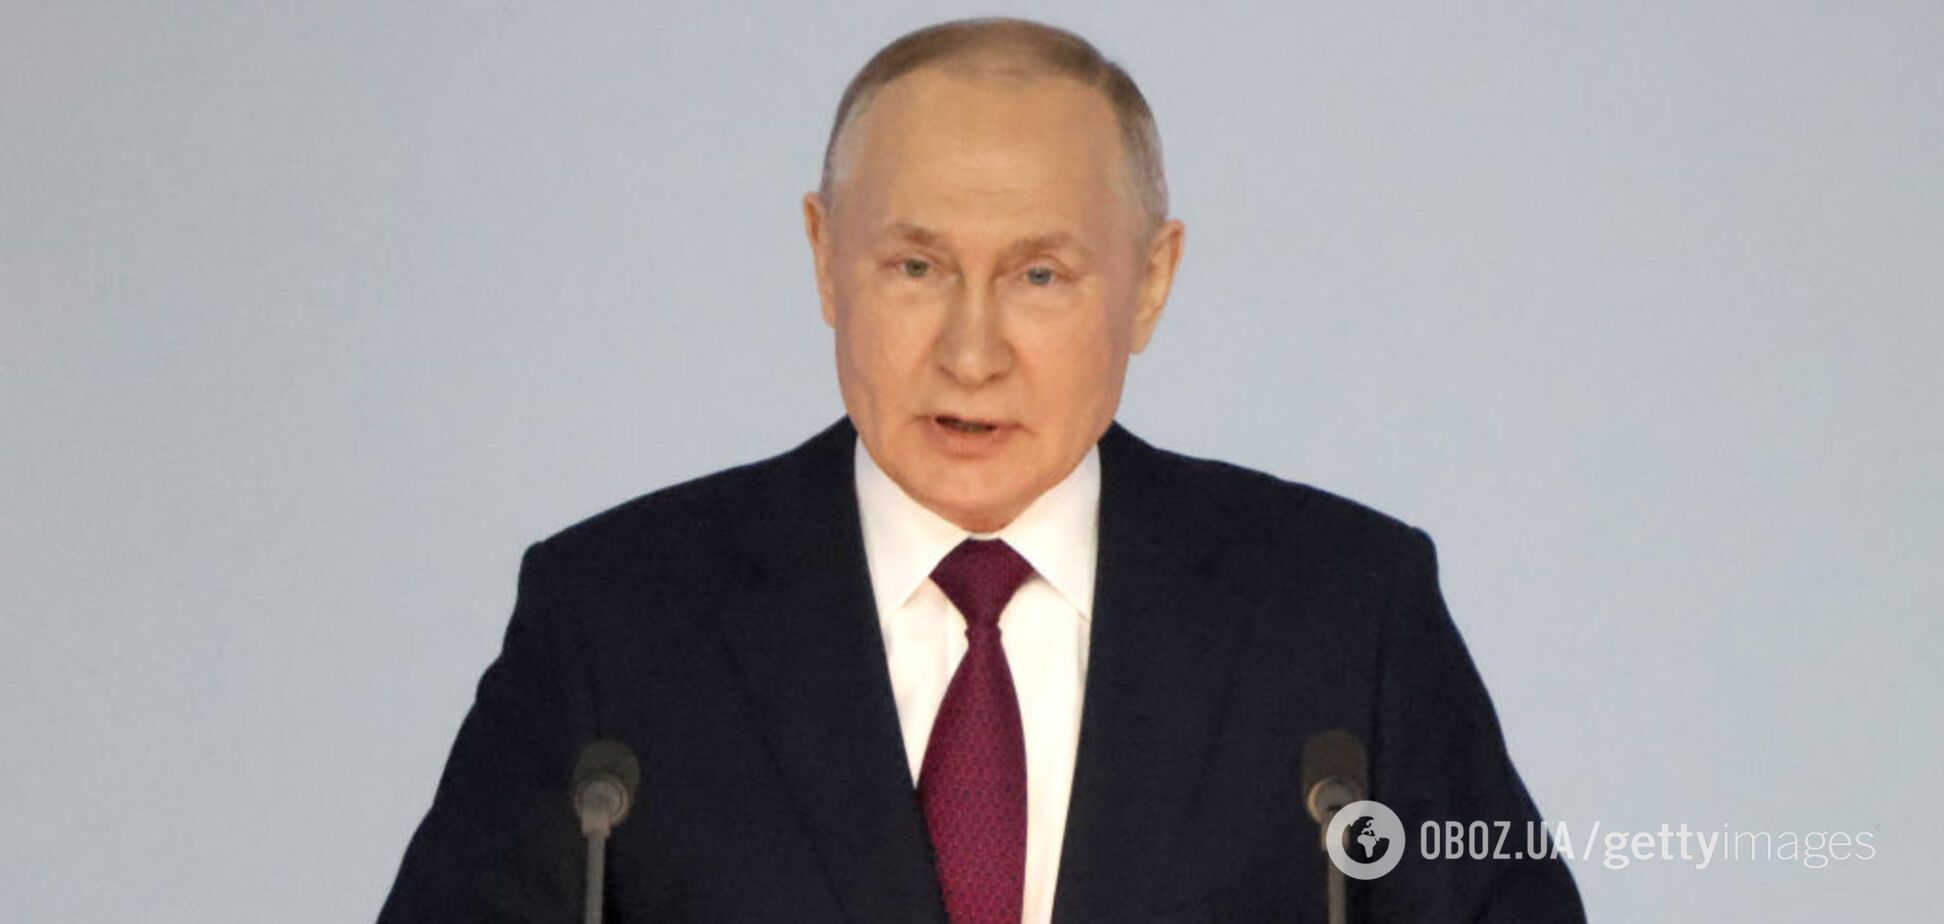 Путин запугивает россиян, что без победы над Украиной Россия перестанет существовать